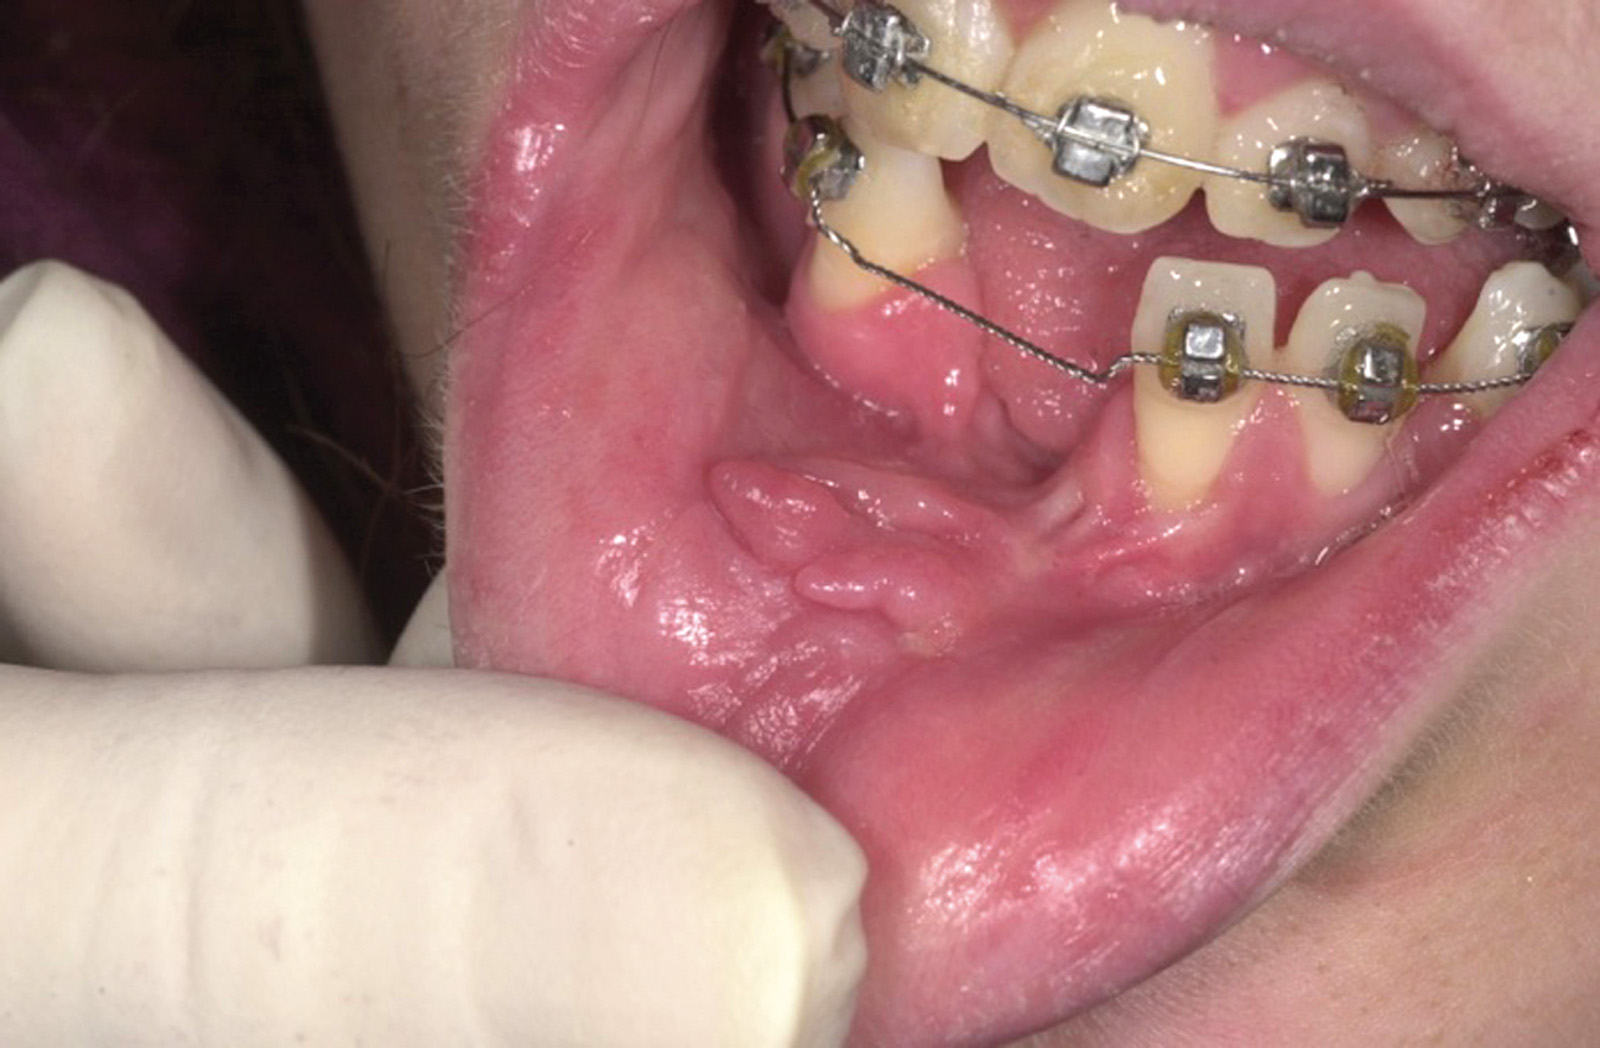 Profili di responsabilità professionale in ortodonzia: errori e complicanze